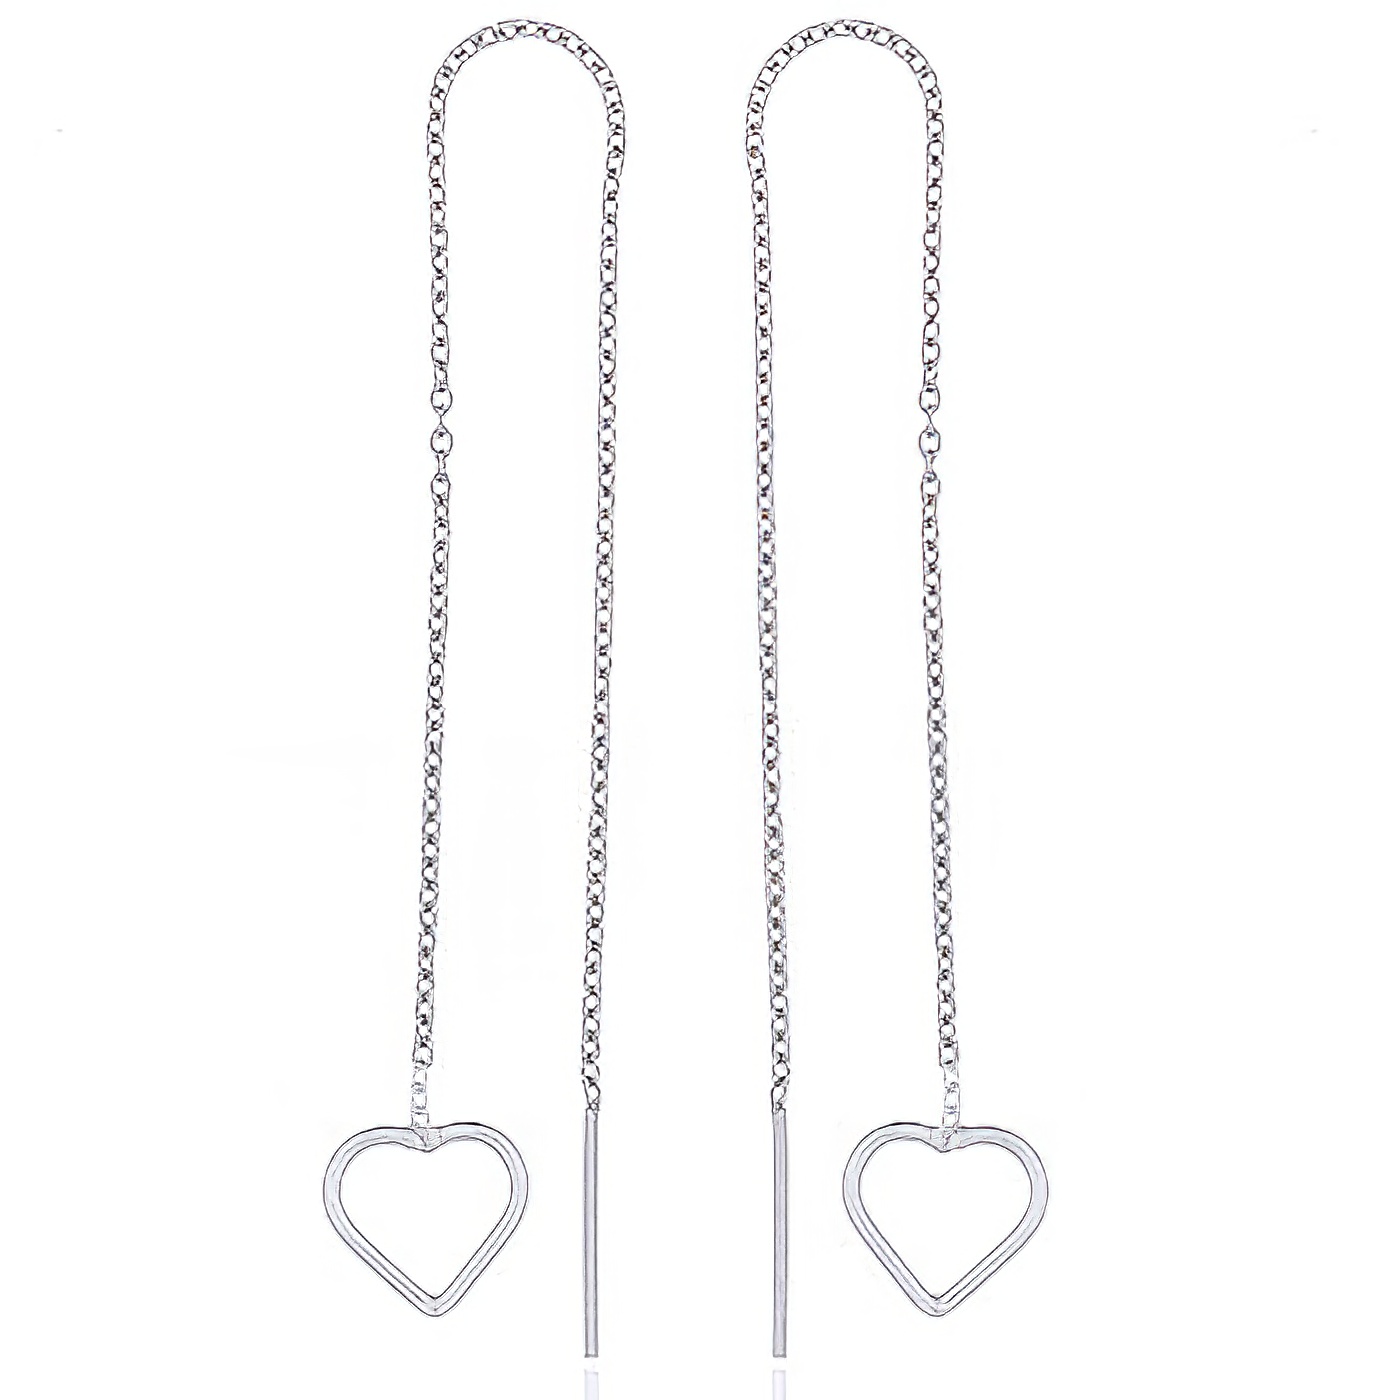 Neat Open Heart Sterling Silver Threader Earrings by BeYindi 